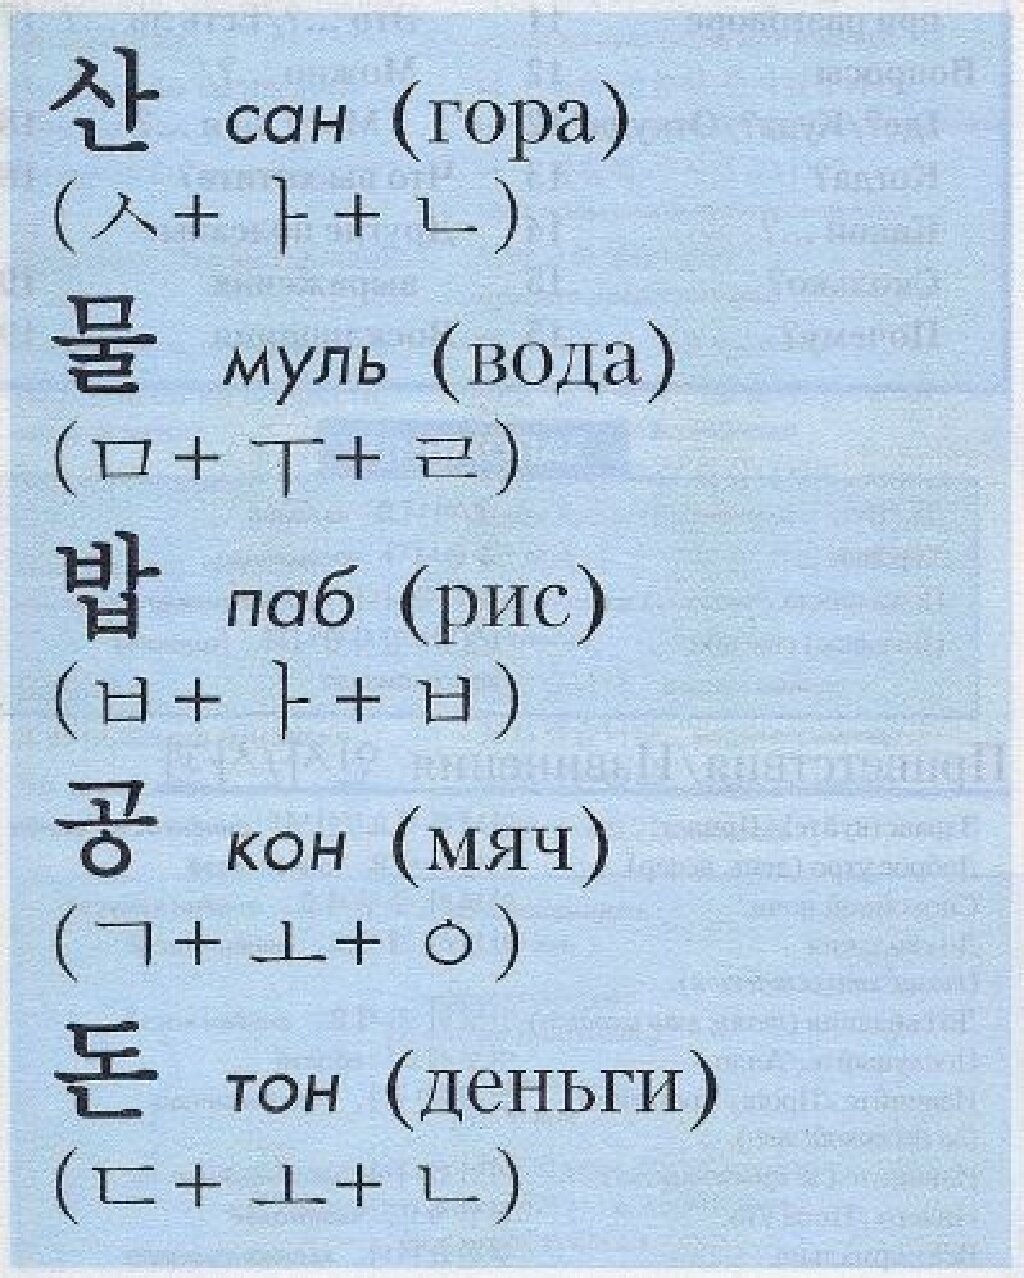 Что означает корейское слово. Учить корейский язык с нуля. Как научить корейский язык. Корейские слова для начинающих с переводом.